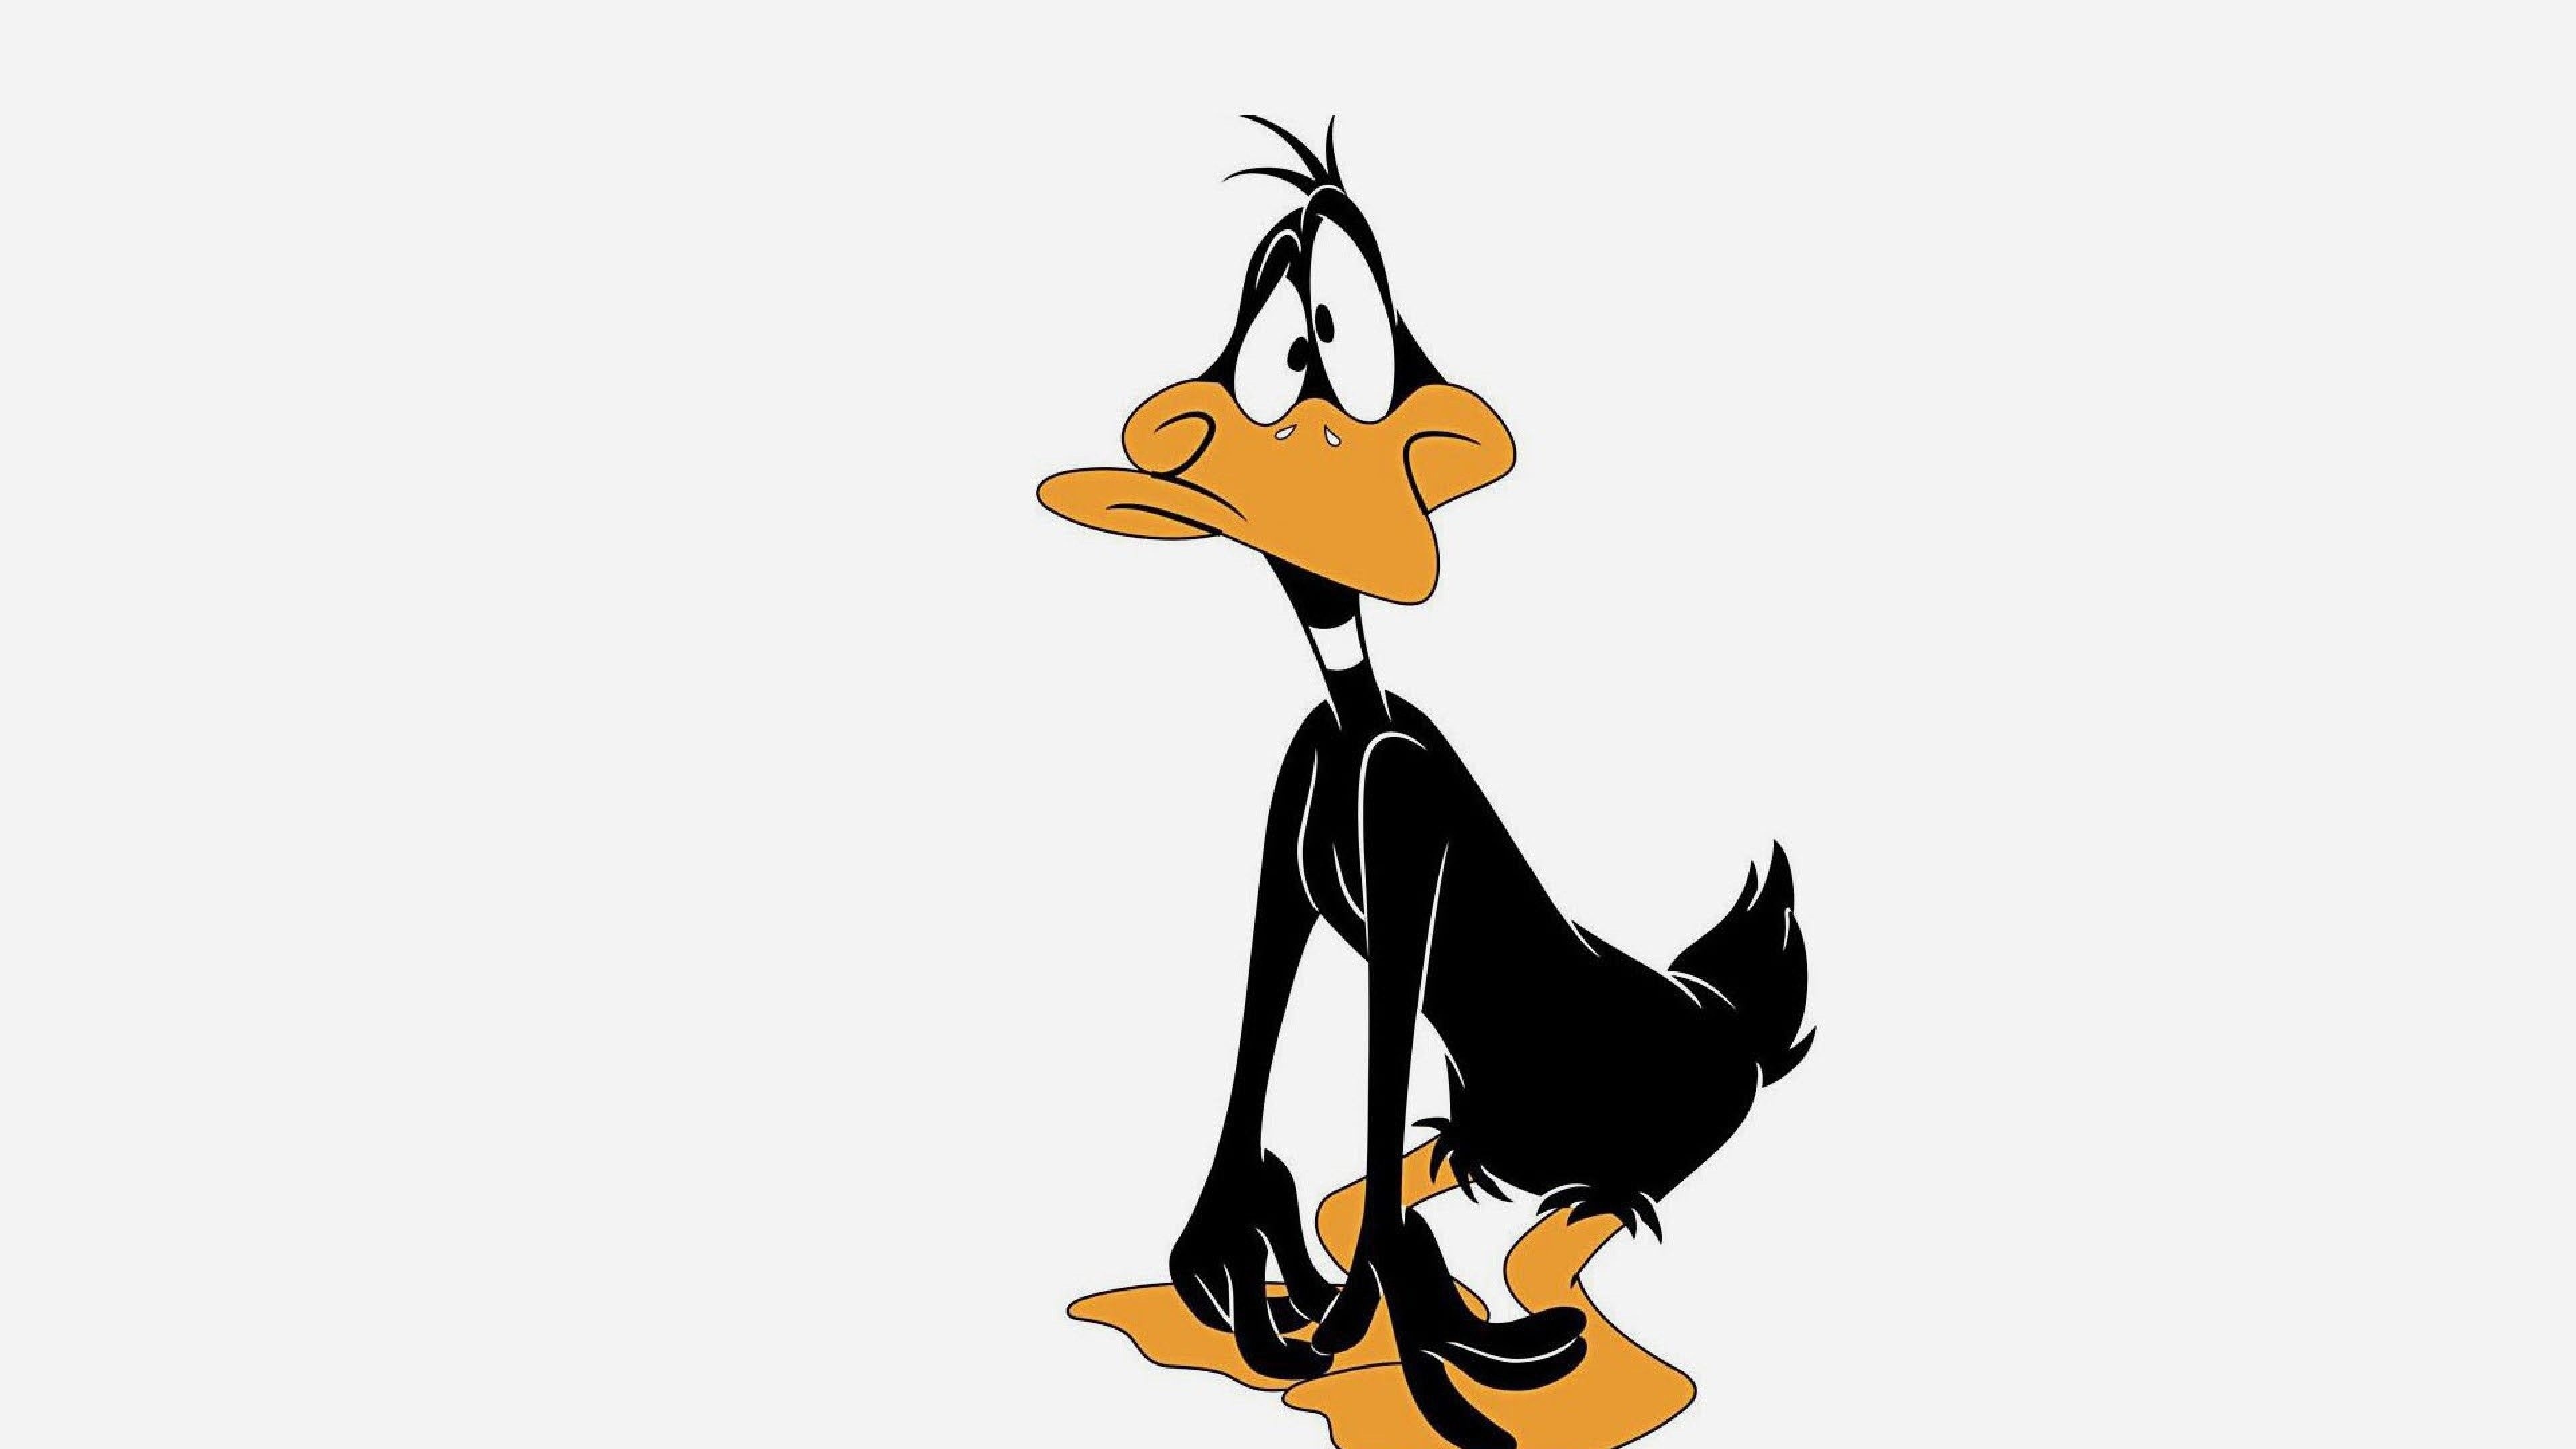 Daffy Duck wallpapers, Looney Tunes, Cartoon character, 3840x2160 4K Desktop